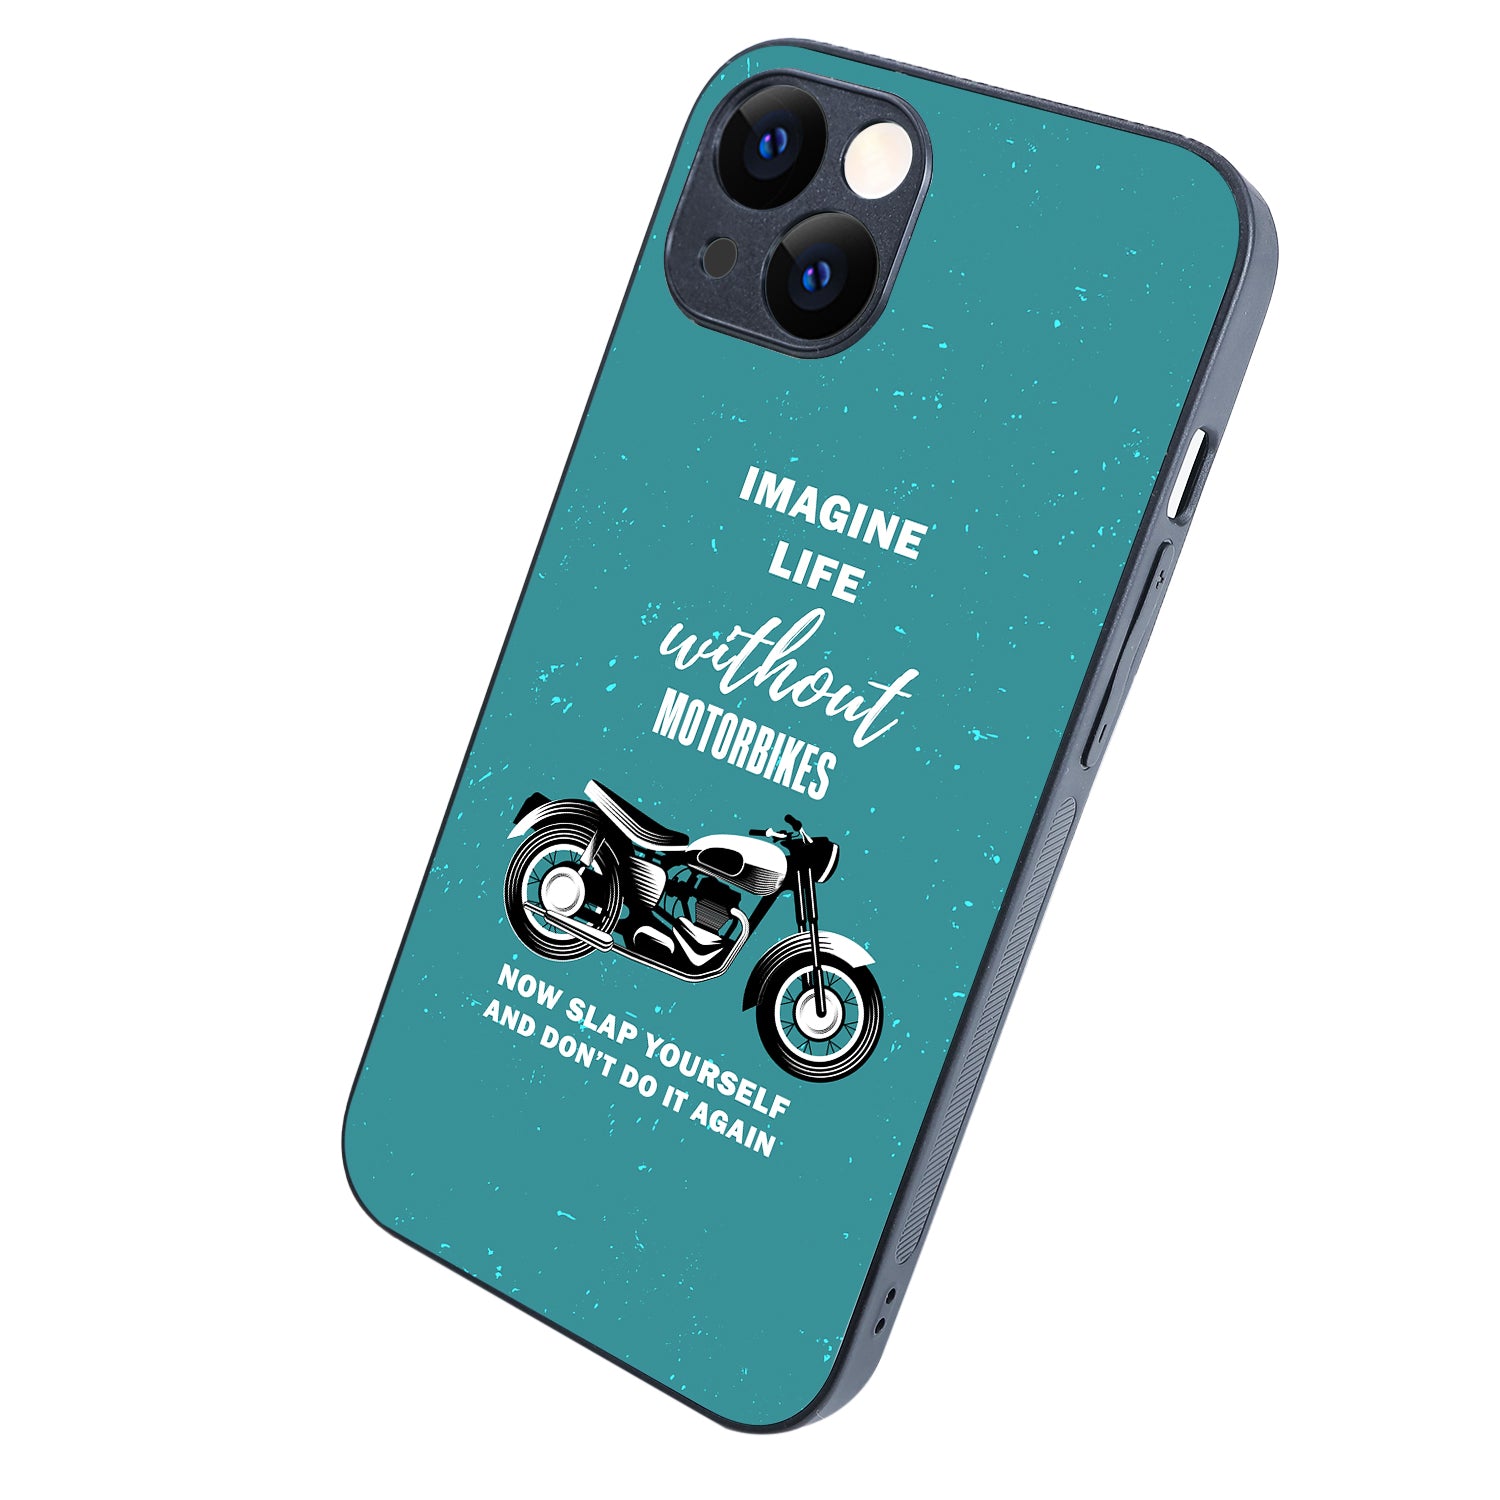 Imagine Life Without MotorbikeBike iPhone 13 Case